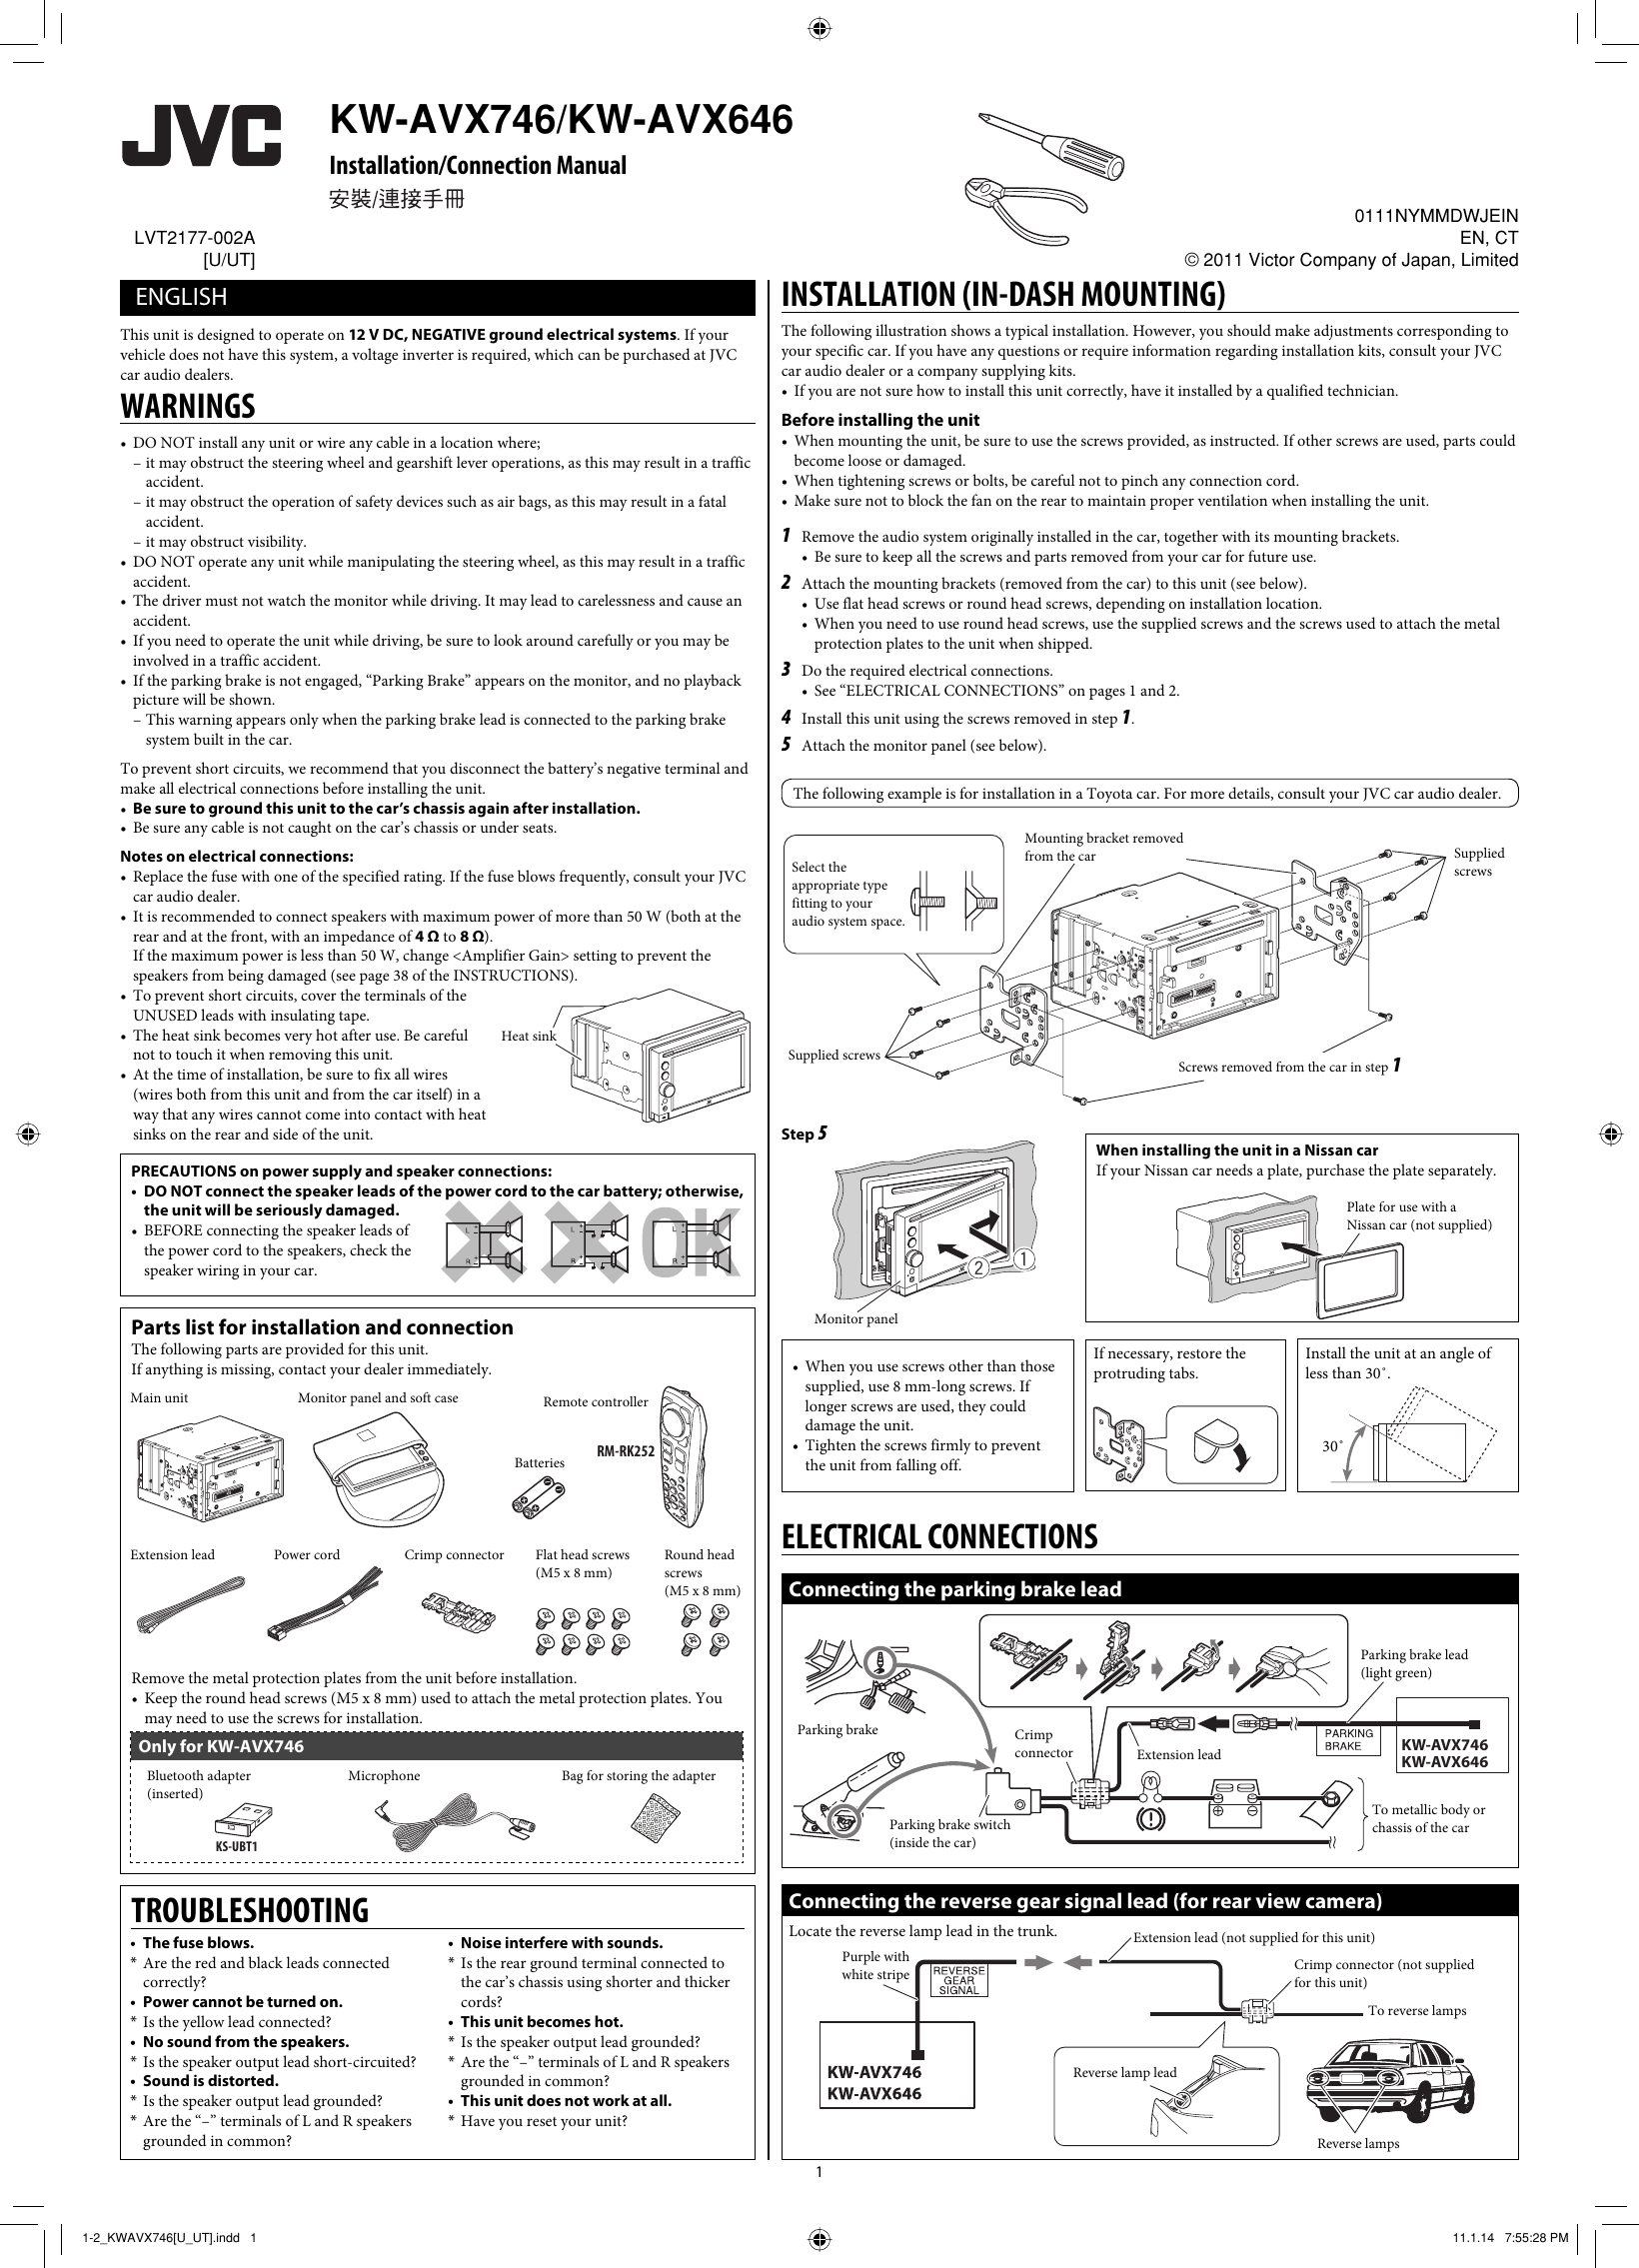 Page 1 of 4 - JVC KW-AVX646U KW-AVX746/KW-AVX646[U/UT] User Manual KW-AVX646U, KW-AVX646UT, KW-AVX746U, KW-AVX746UT LVT2177-002A